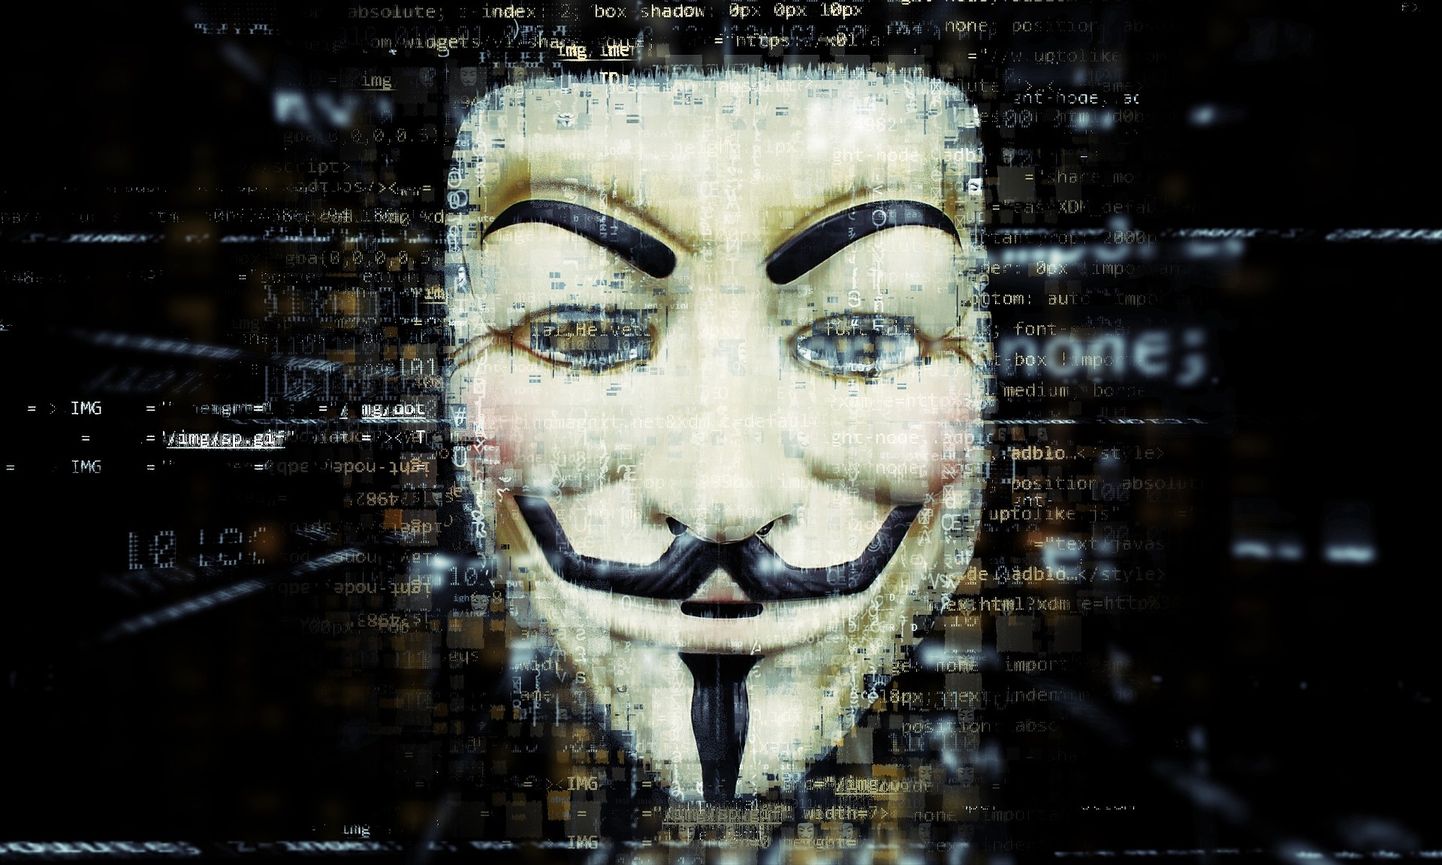 FSB poolt suurimate ründajate seas nimetatud Anonymous on rahvusvaheline häktivistide liikumine, mis kasutab oma sümbolina sellist Guy Fawkesi maski.